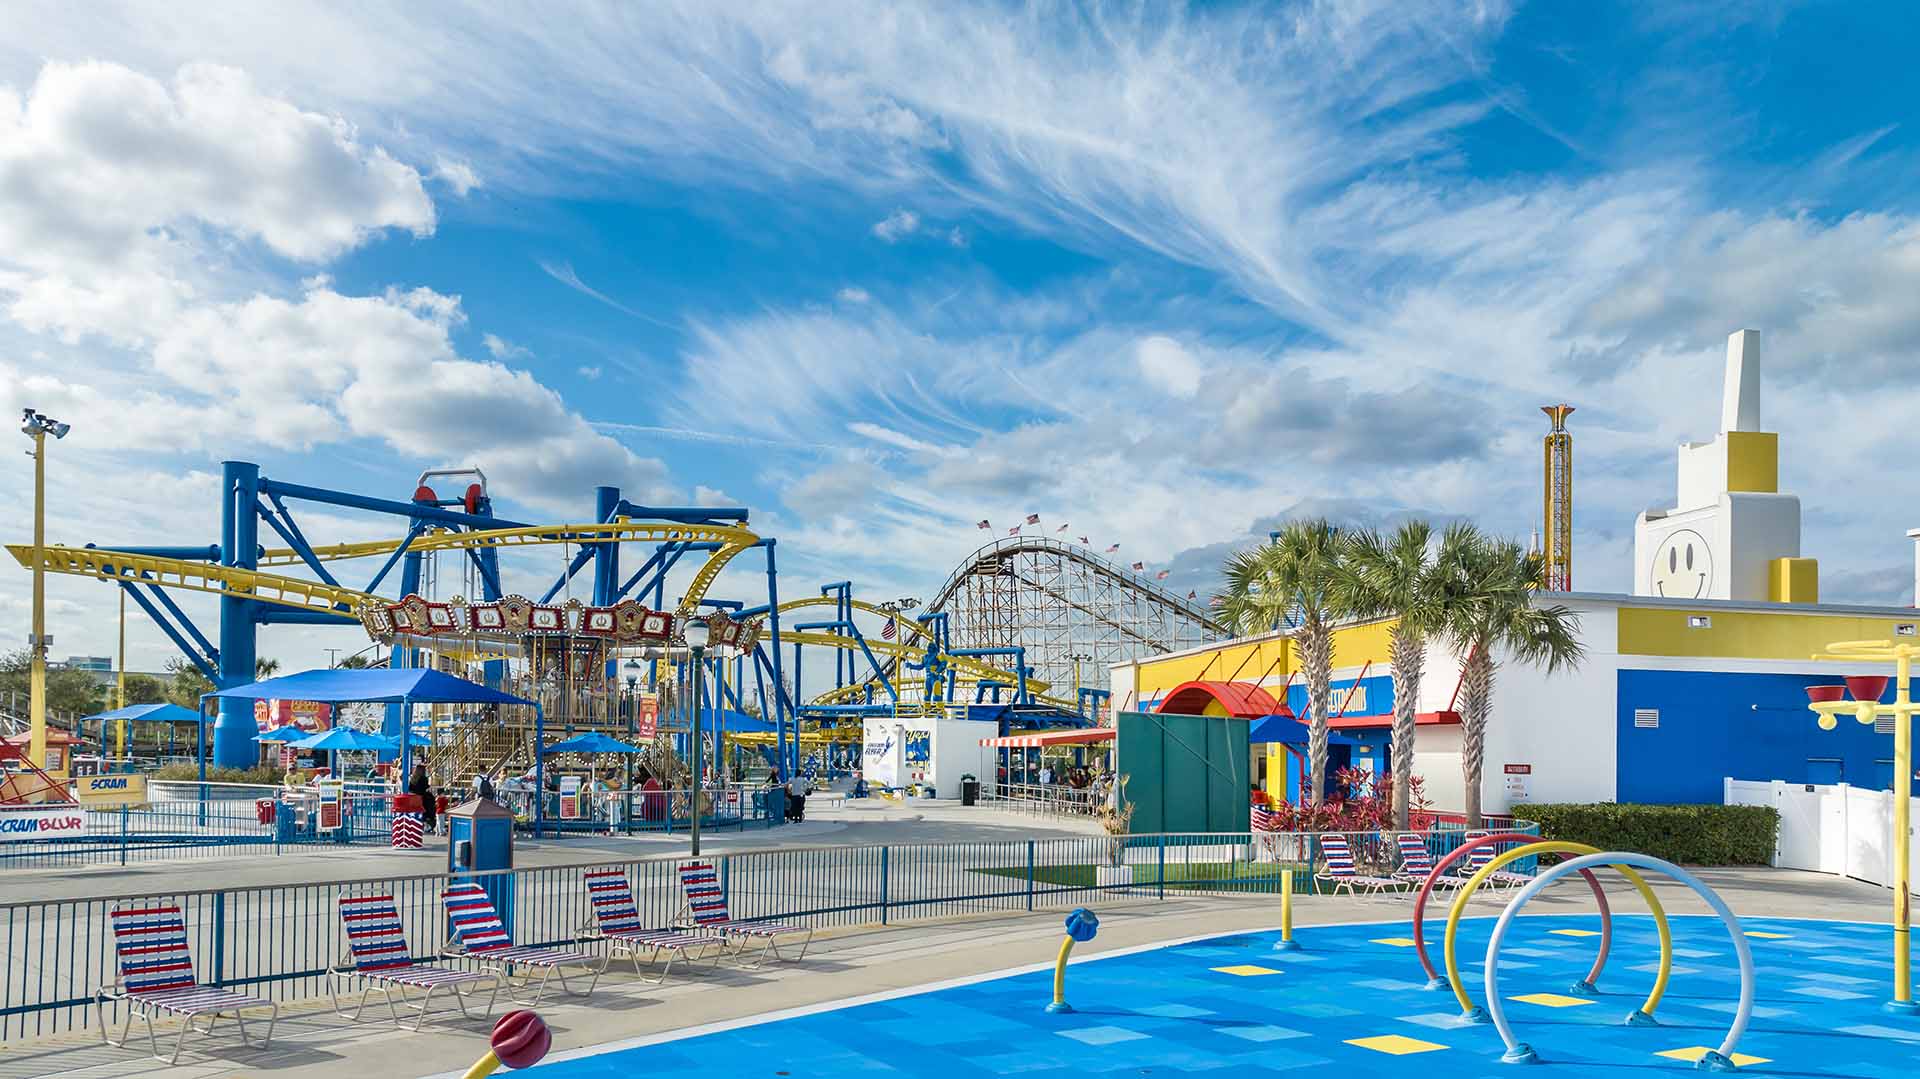 Blick auf das Karussell und die Achterbahnen im Fun Spot America in Orlando, Florida